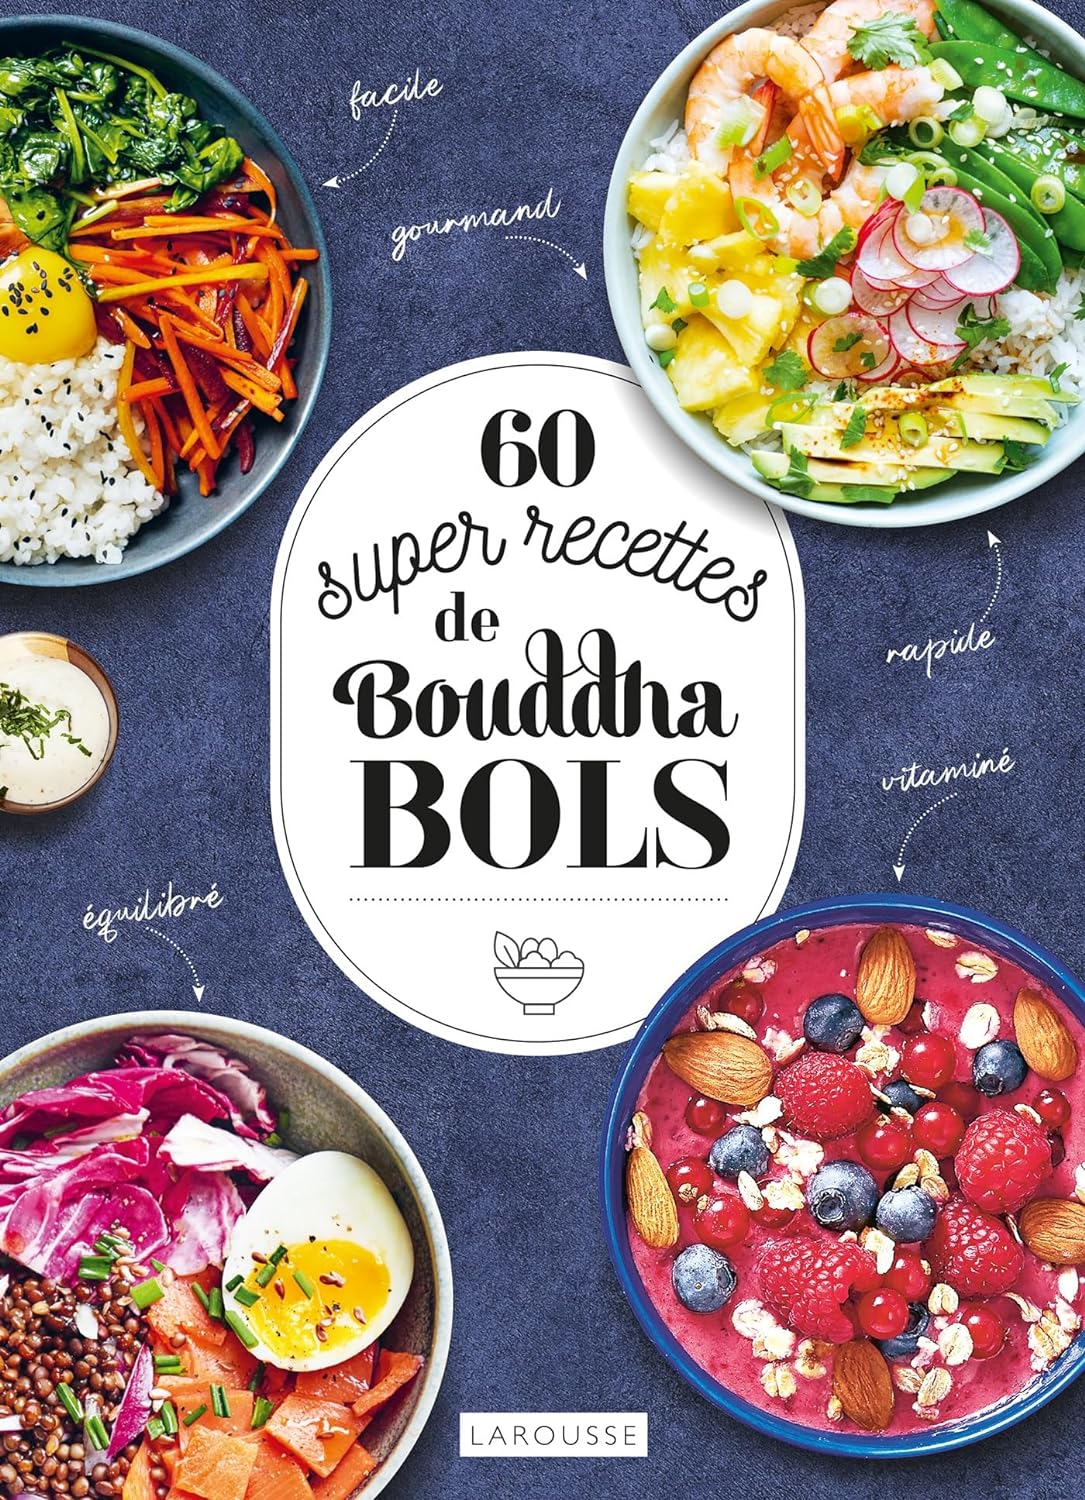 60 super recettes de bouddha bols    - Larousse Ed. - Livre de cuisine - 